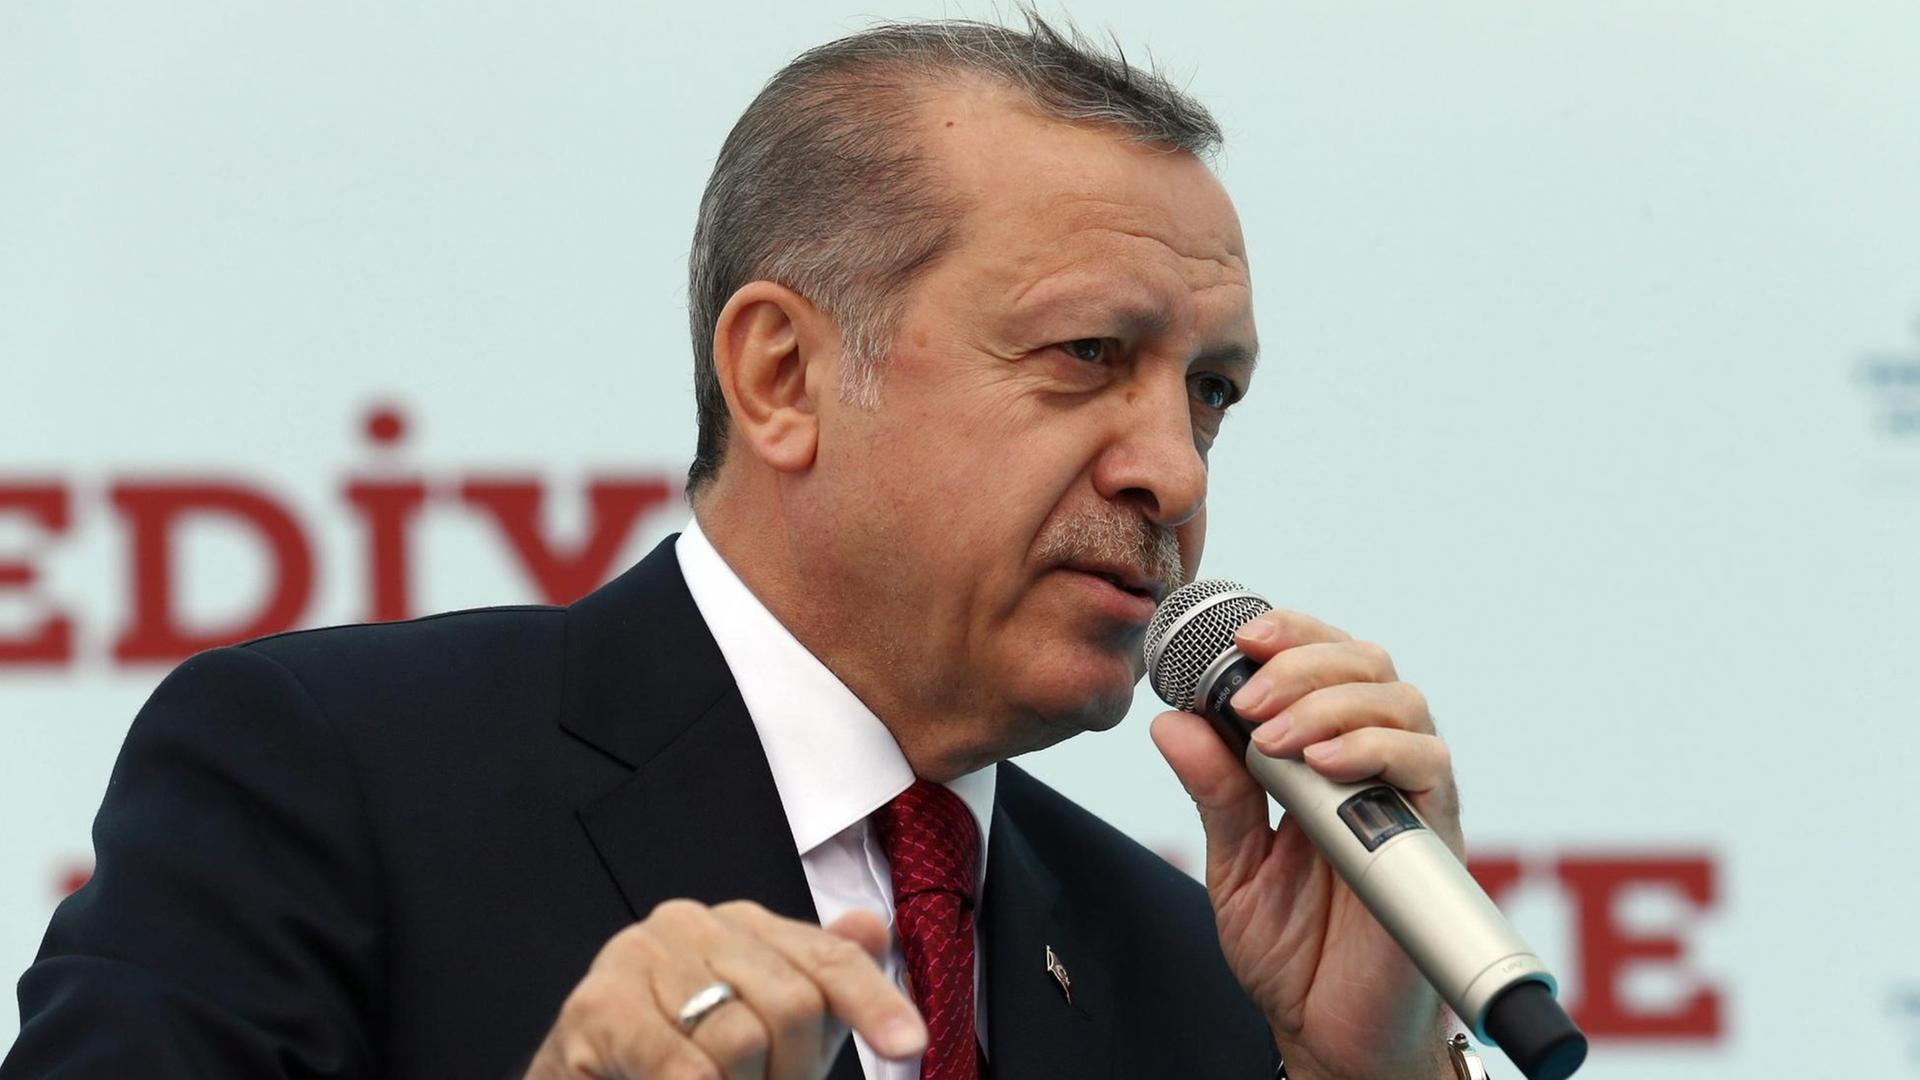 Der türkische Staatspräsident Recep Erdogan bei einer Veranstaltung in Istanbul am 6. Mai 2016.